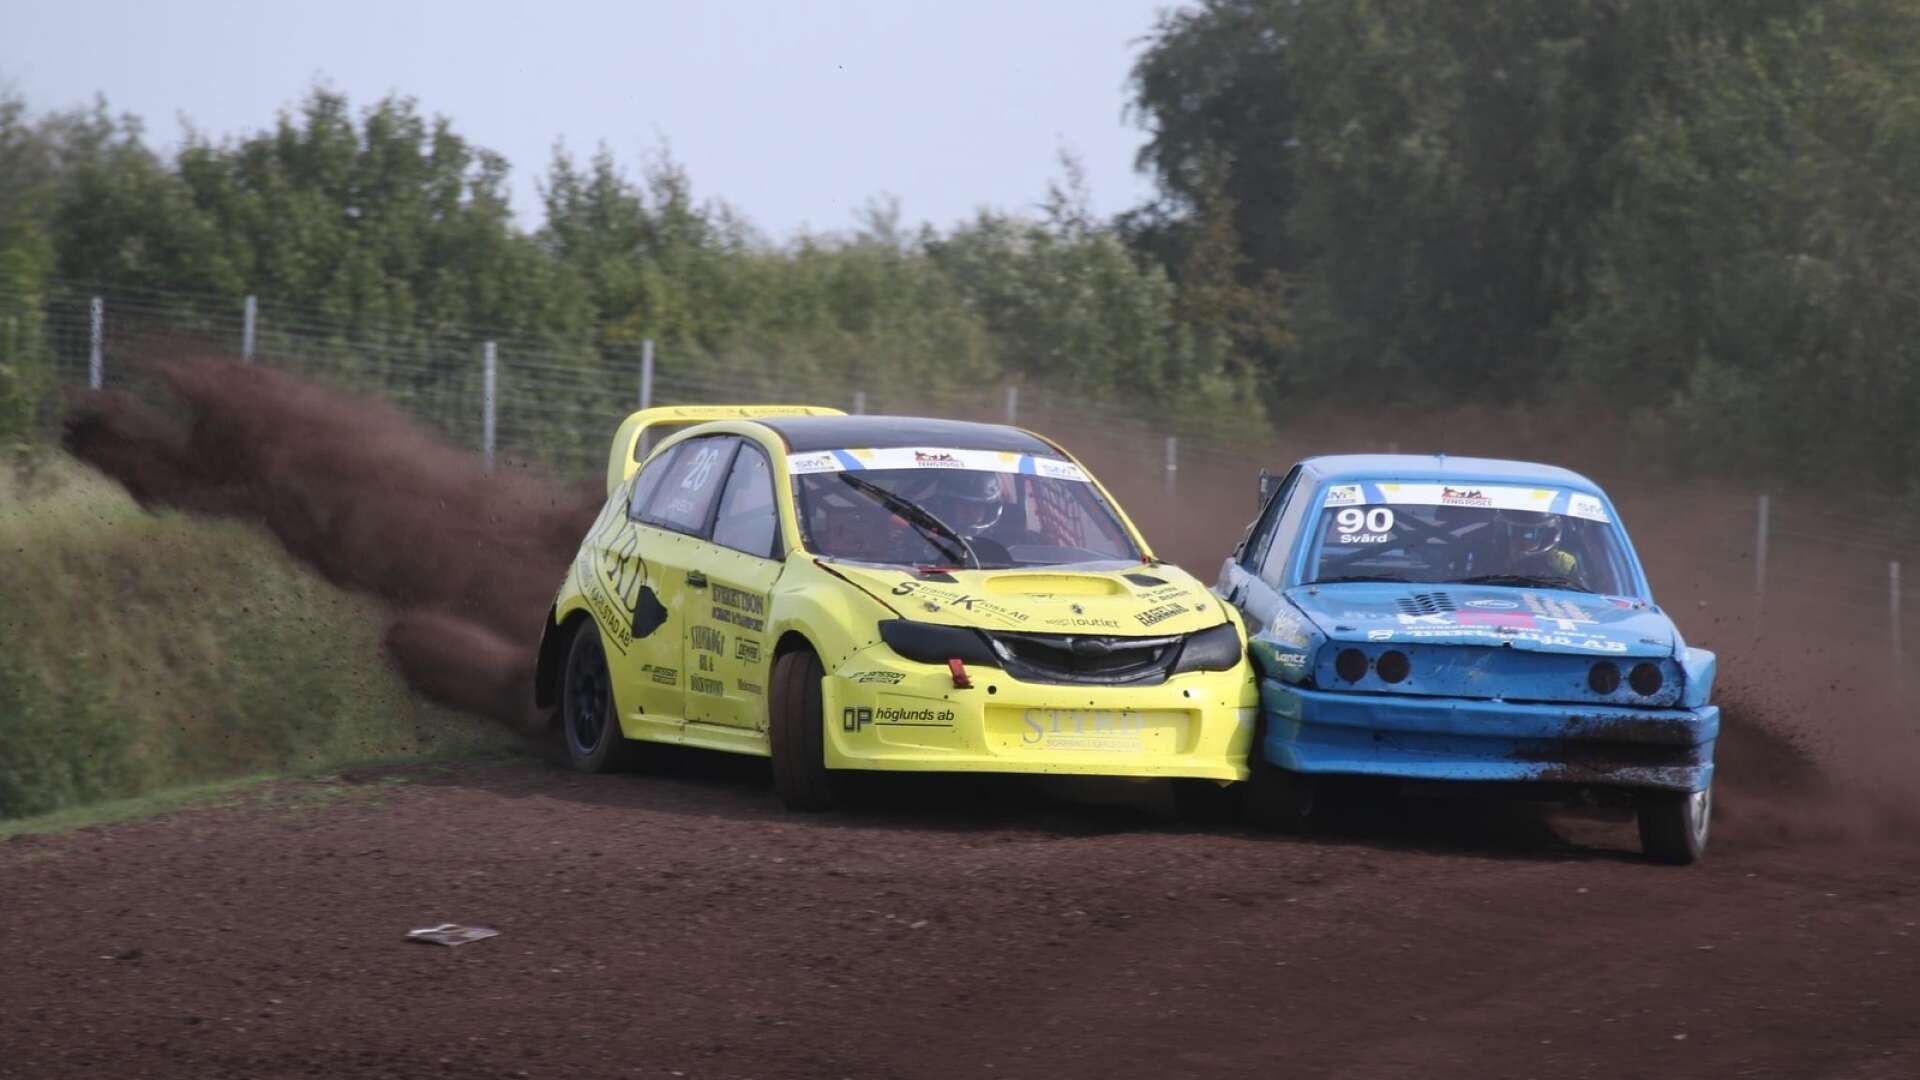 En silverplats blev det för Jim Jansson (i gul bil) i Silvercupen i rallycross efter en krasch i finalen. 